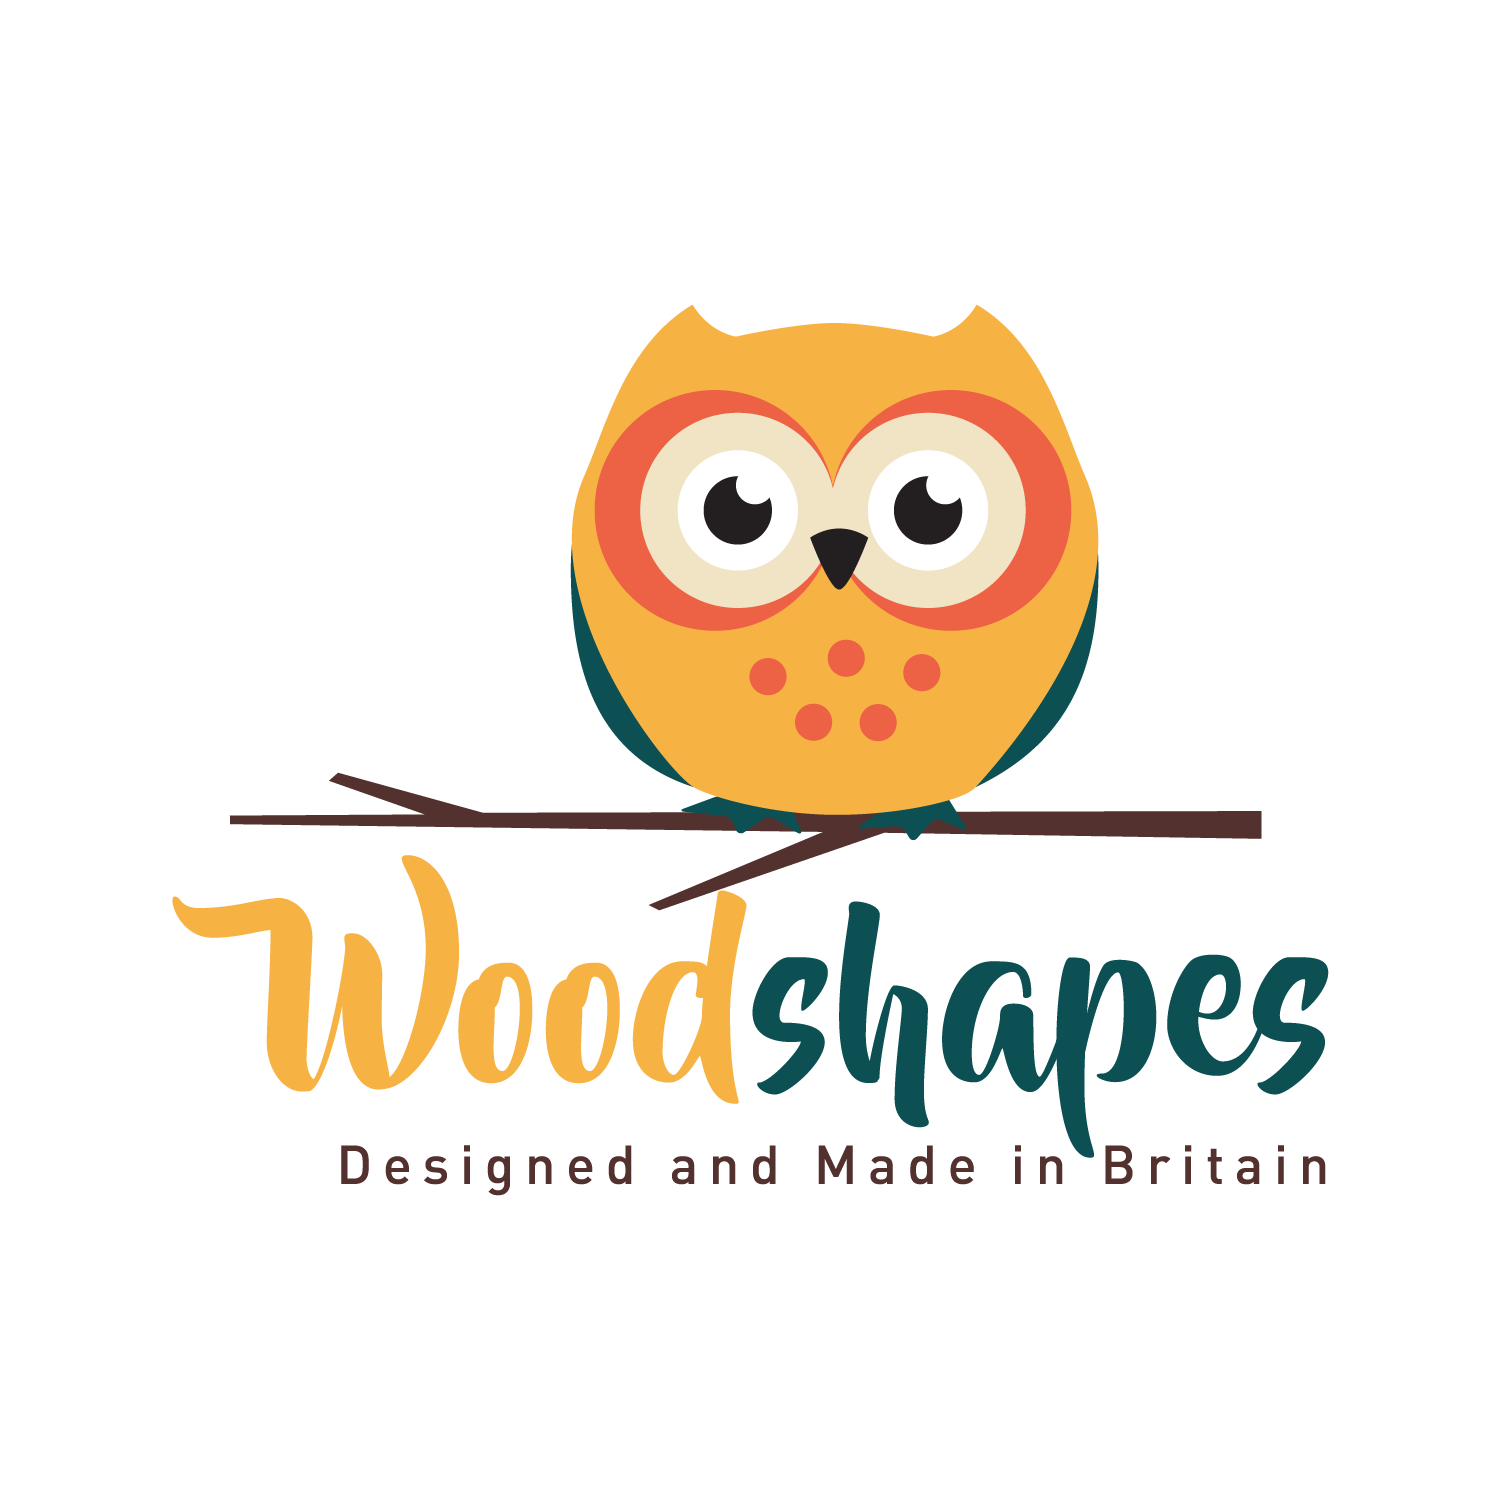 www.woodshapes.co.uk